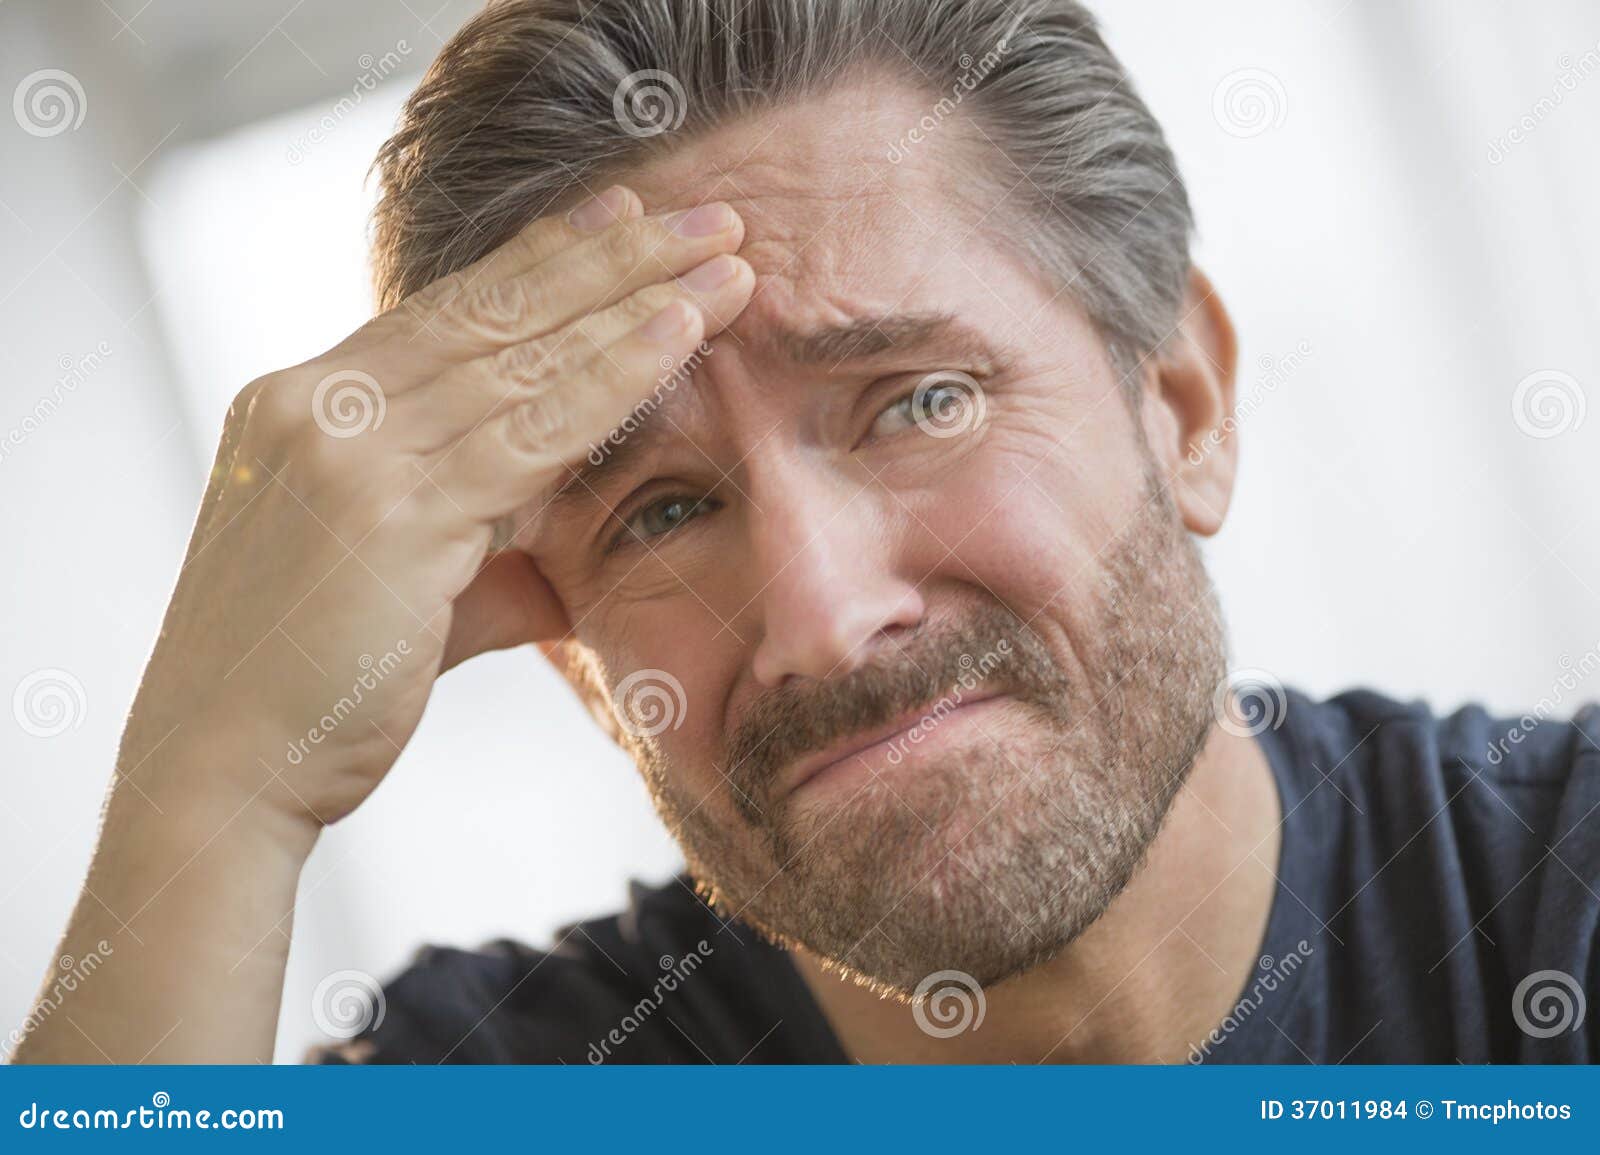 man with headache rubbing forehead